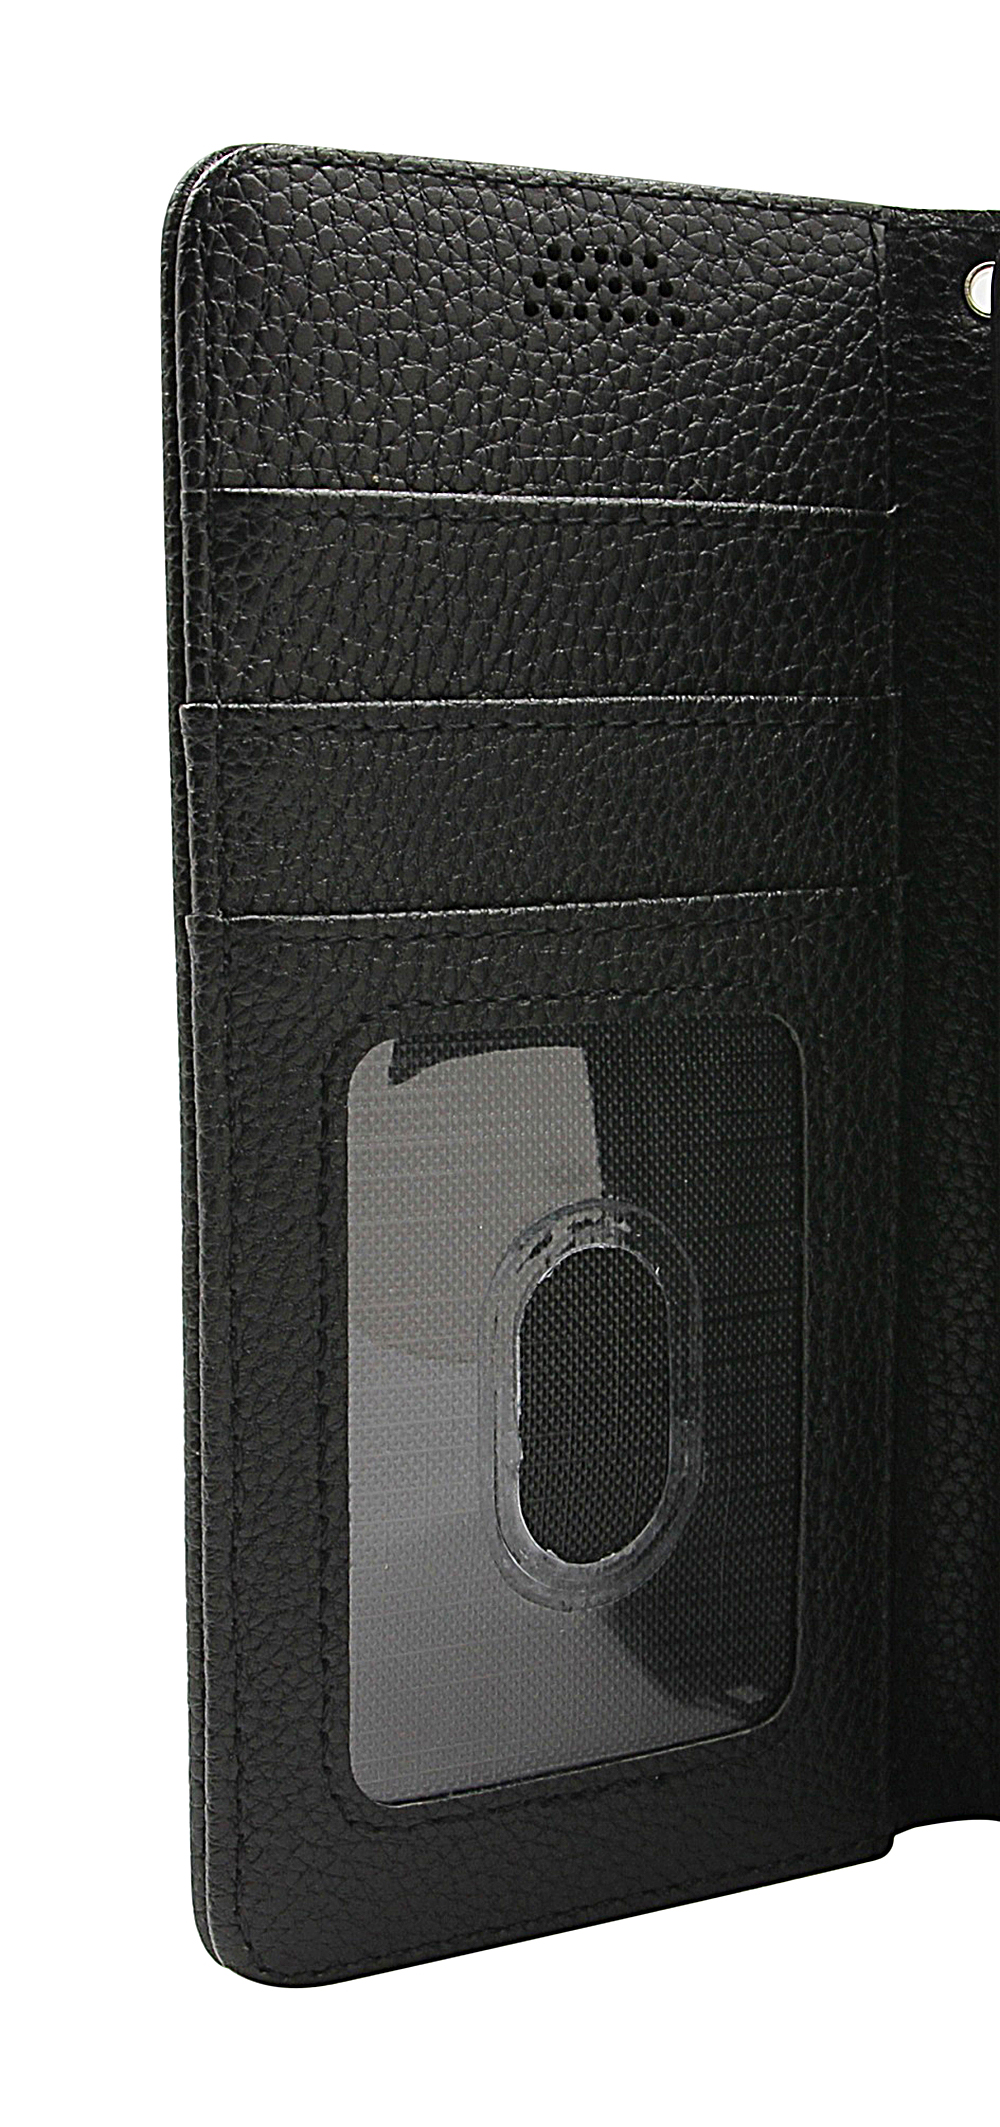 New Standcase Wallet LG G5 / G5 SE (H850/H840)